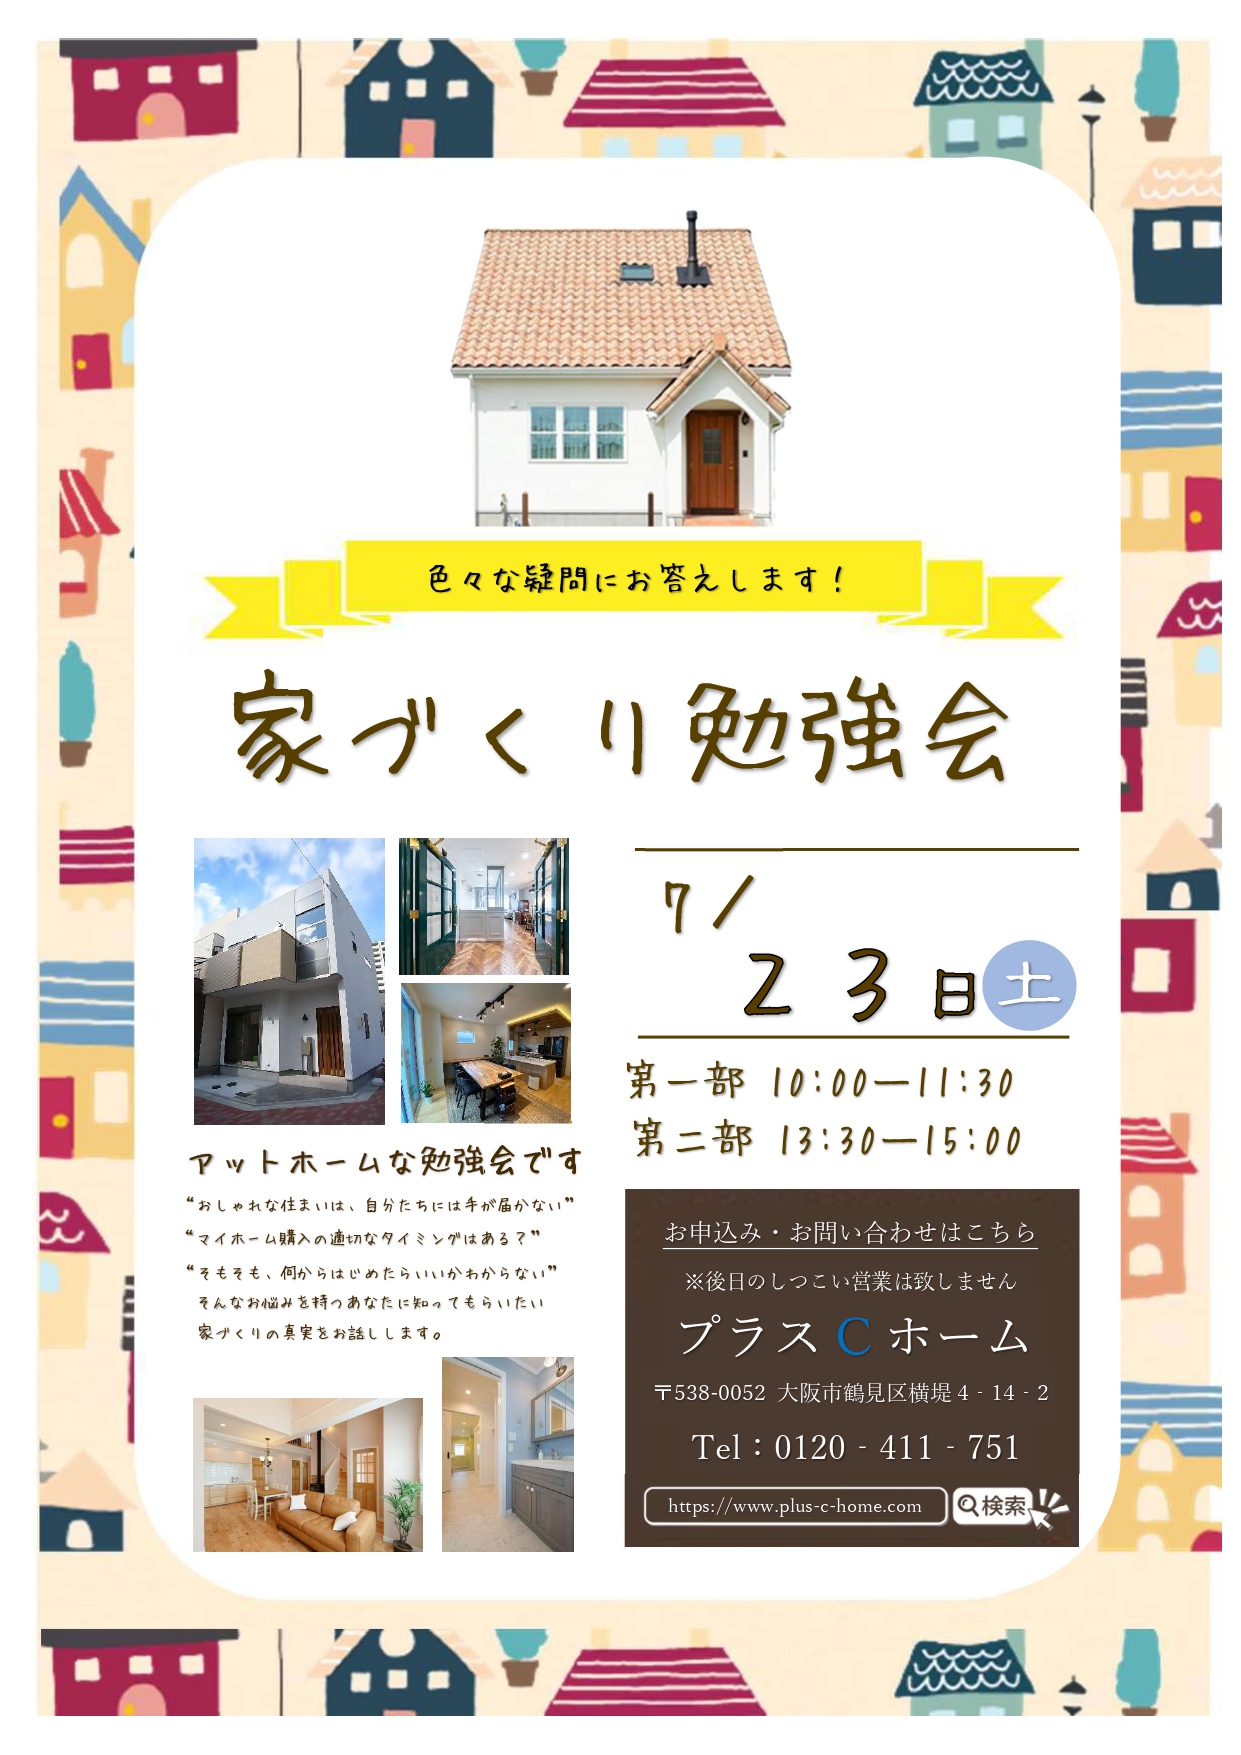 ３組様のご縁に感謝です。大阪市鶴見区で高断熱・高気密住宅を建てております工務店Plus C Homeが勉強会を開催します♪